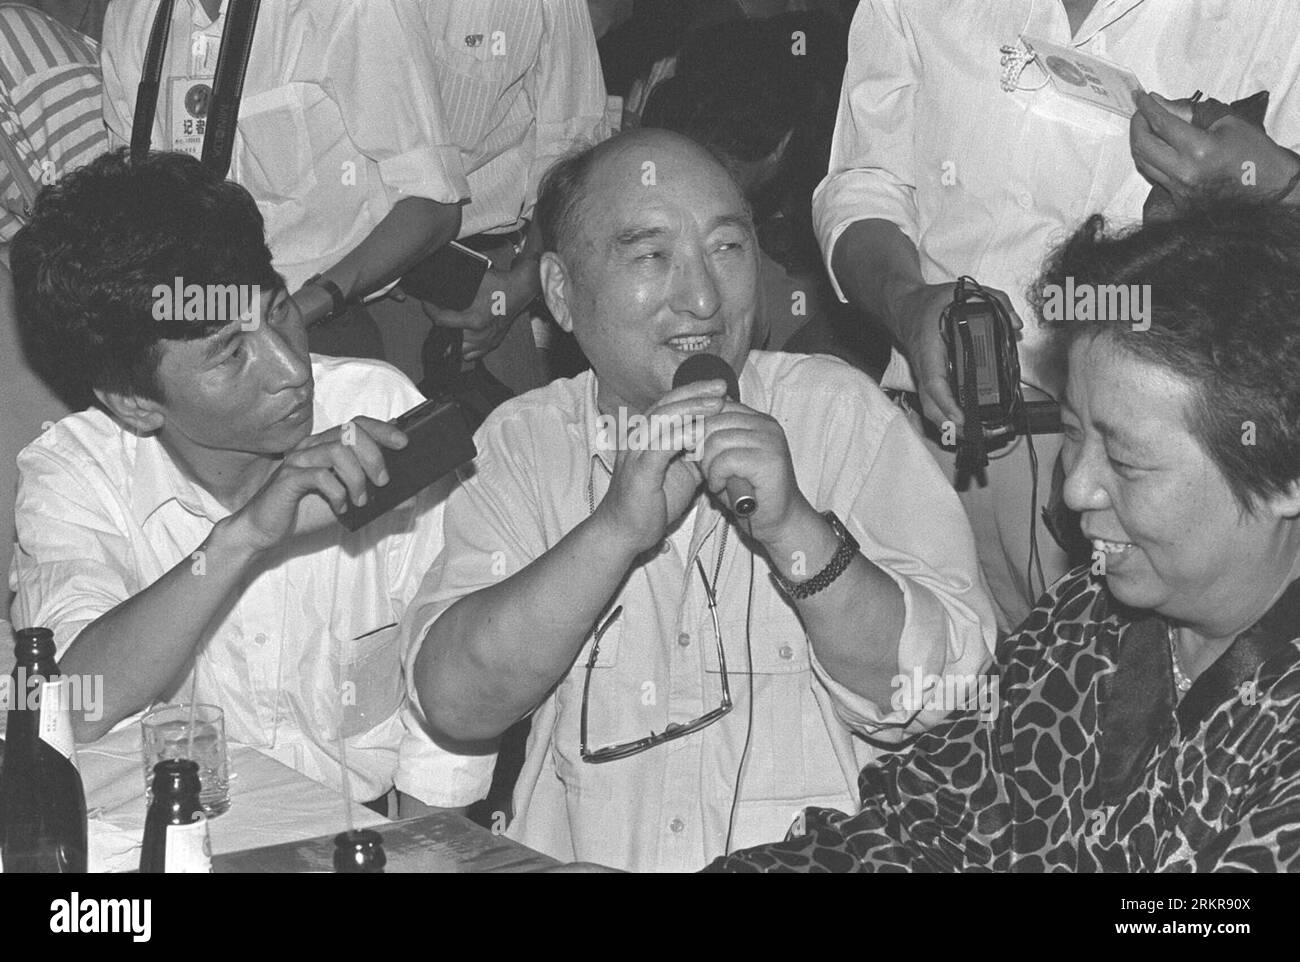 Bildnummer: 58154719 Datum: 24.08.1992 Copyright: Imago/Xinhua (120627) -- BEIJING, 27 de junio de 2012 (Xinhua) -- Foto de archivo tomada el 24 de agosto de 1992 muestra al reconocido actor chino Chen Qiang (C) hablando con audiencias y reporteros durante el Festival de Cine de Changchun en Changchun, capital de la provincia de Jilin en el noreste de China. Chen Qiang falleció a la edad de 94 años en Beijing, capital de China, el 26 de junio de 2012. (Xinhua) (llp) CHINA-BEIJING-CHEN QIANG-DEATH (CN) PUBLICATIONxNOTxINxCHN People Kultur Film xbs x2x 1992 quer 58154719 Fecha 24 08 1992 Copyright Imago XINHUA Beijing June 27 2012 XINHUA F Foto de stock